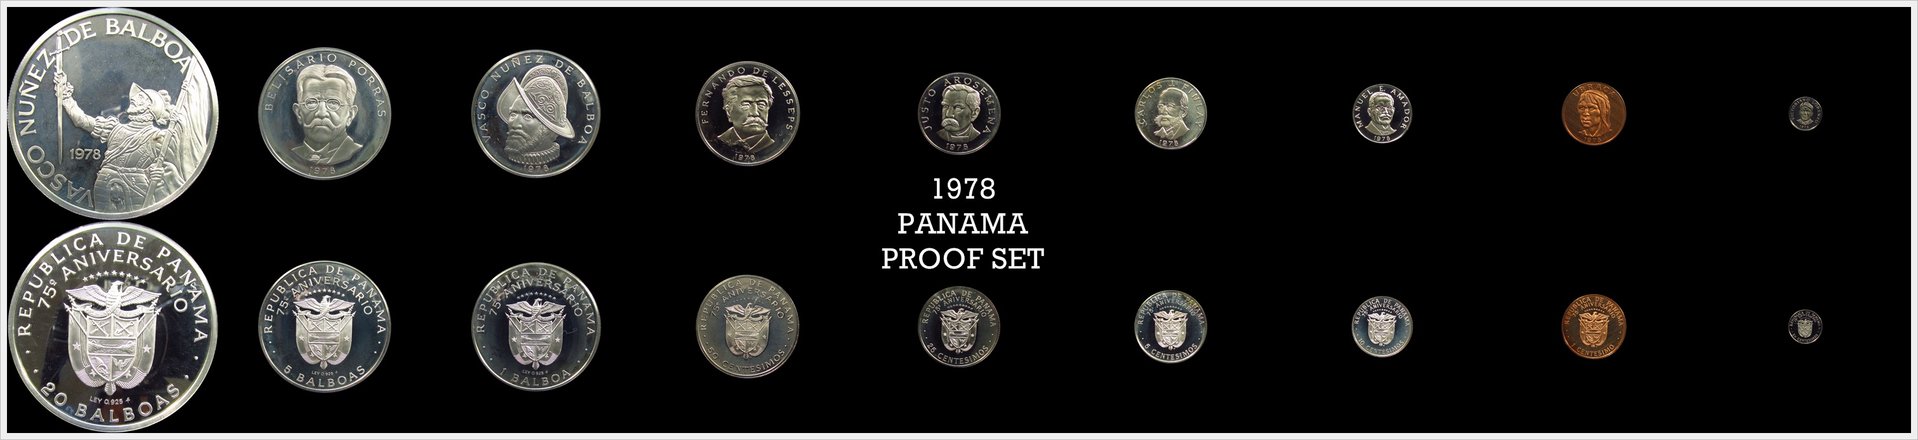 Panama 1978 Proof Set.jpg